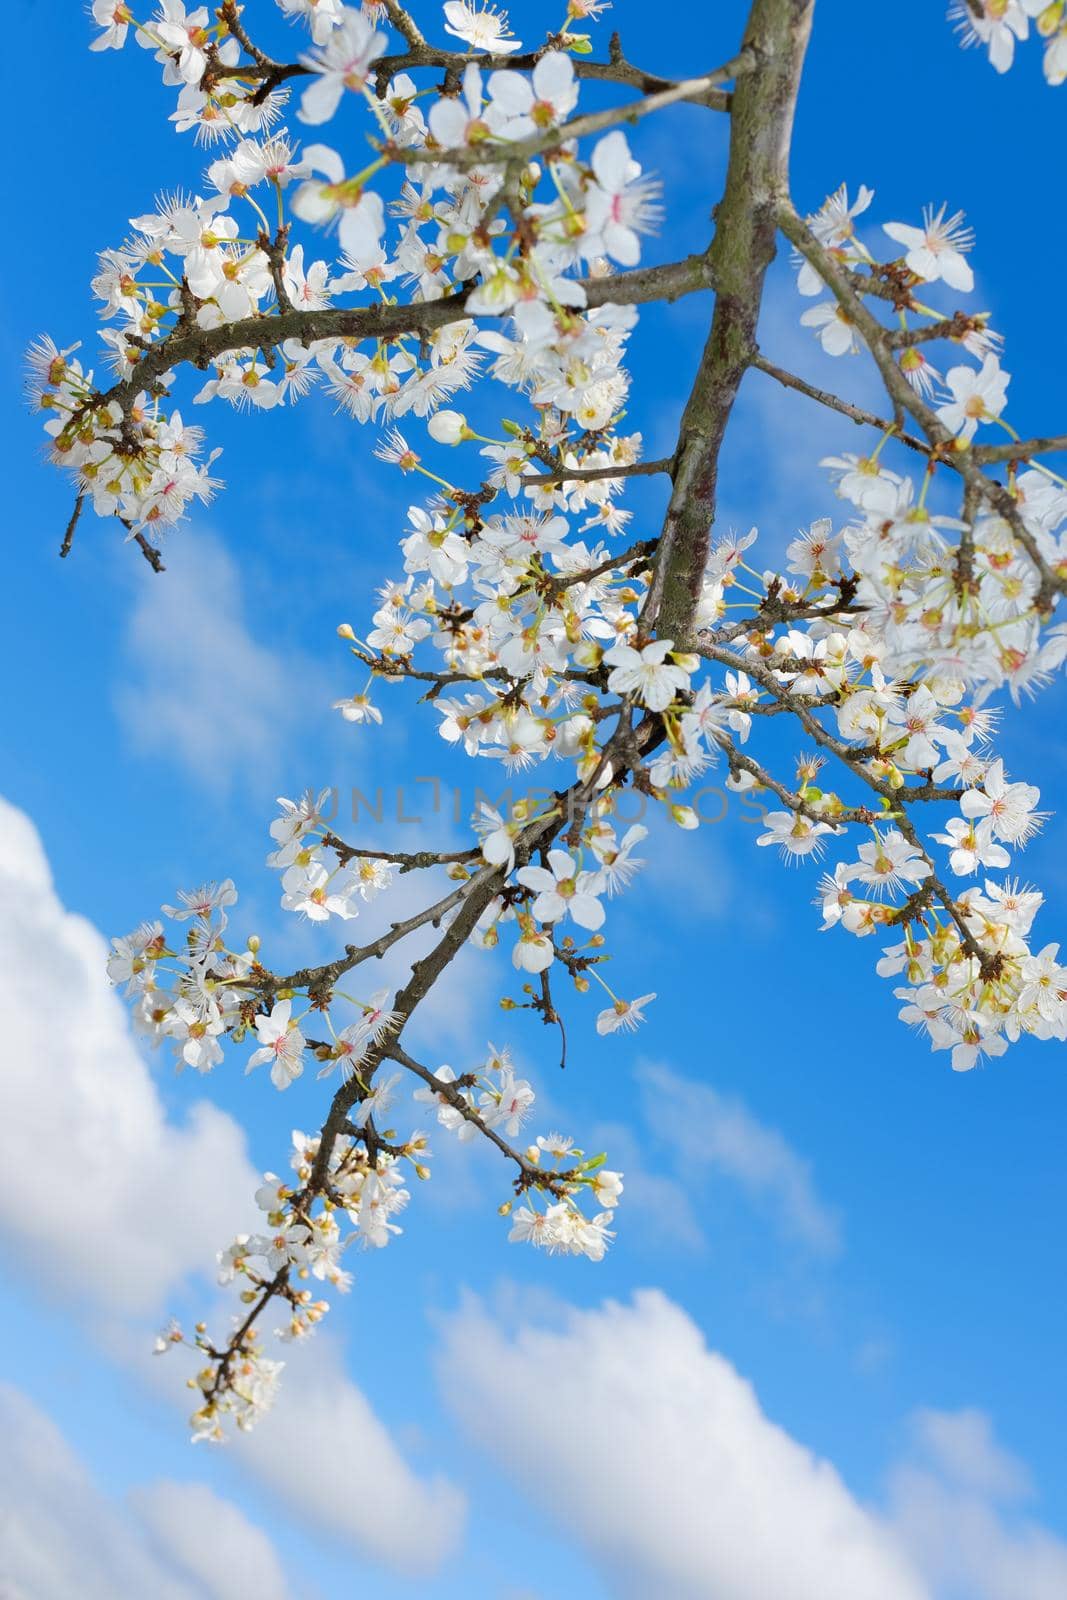 spring white blossom against blue sky, flower, fresh